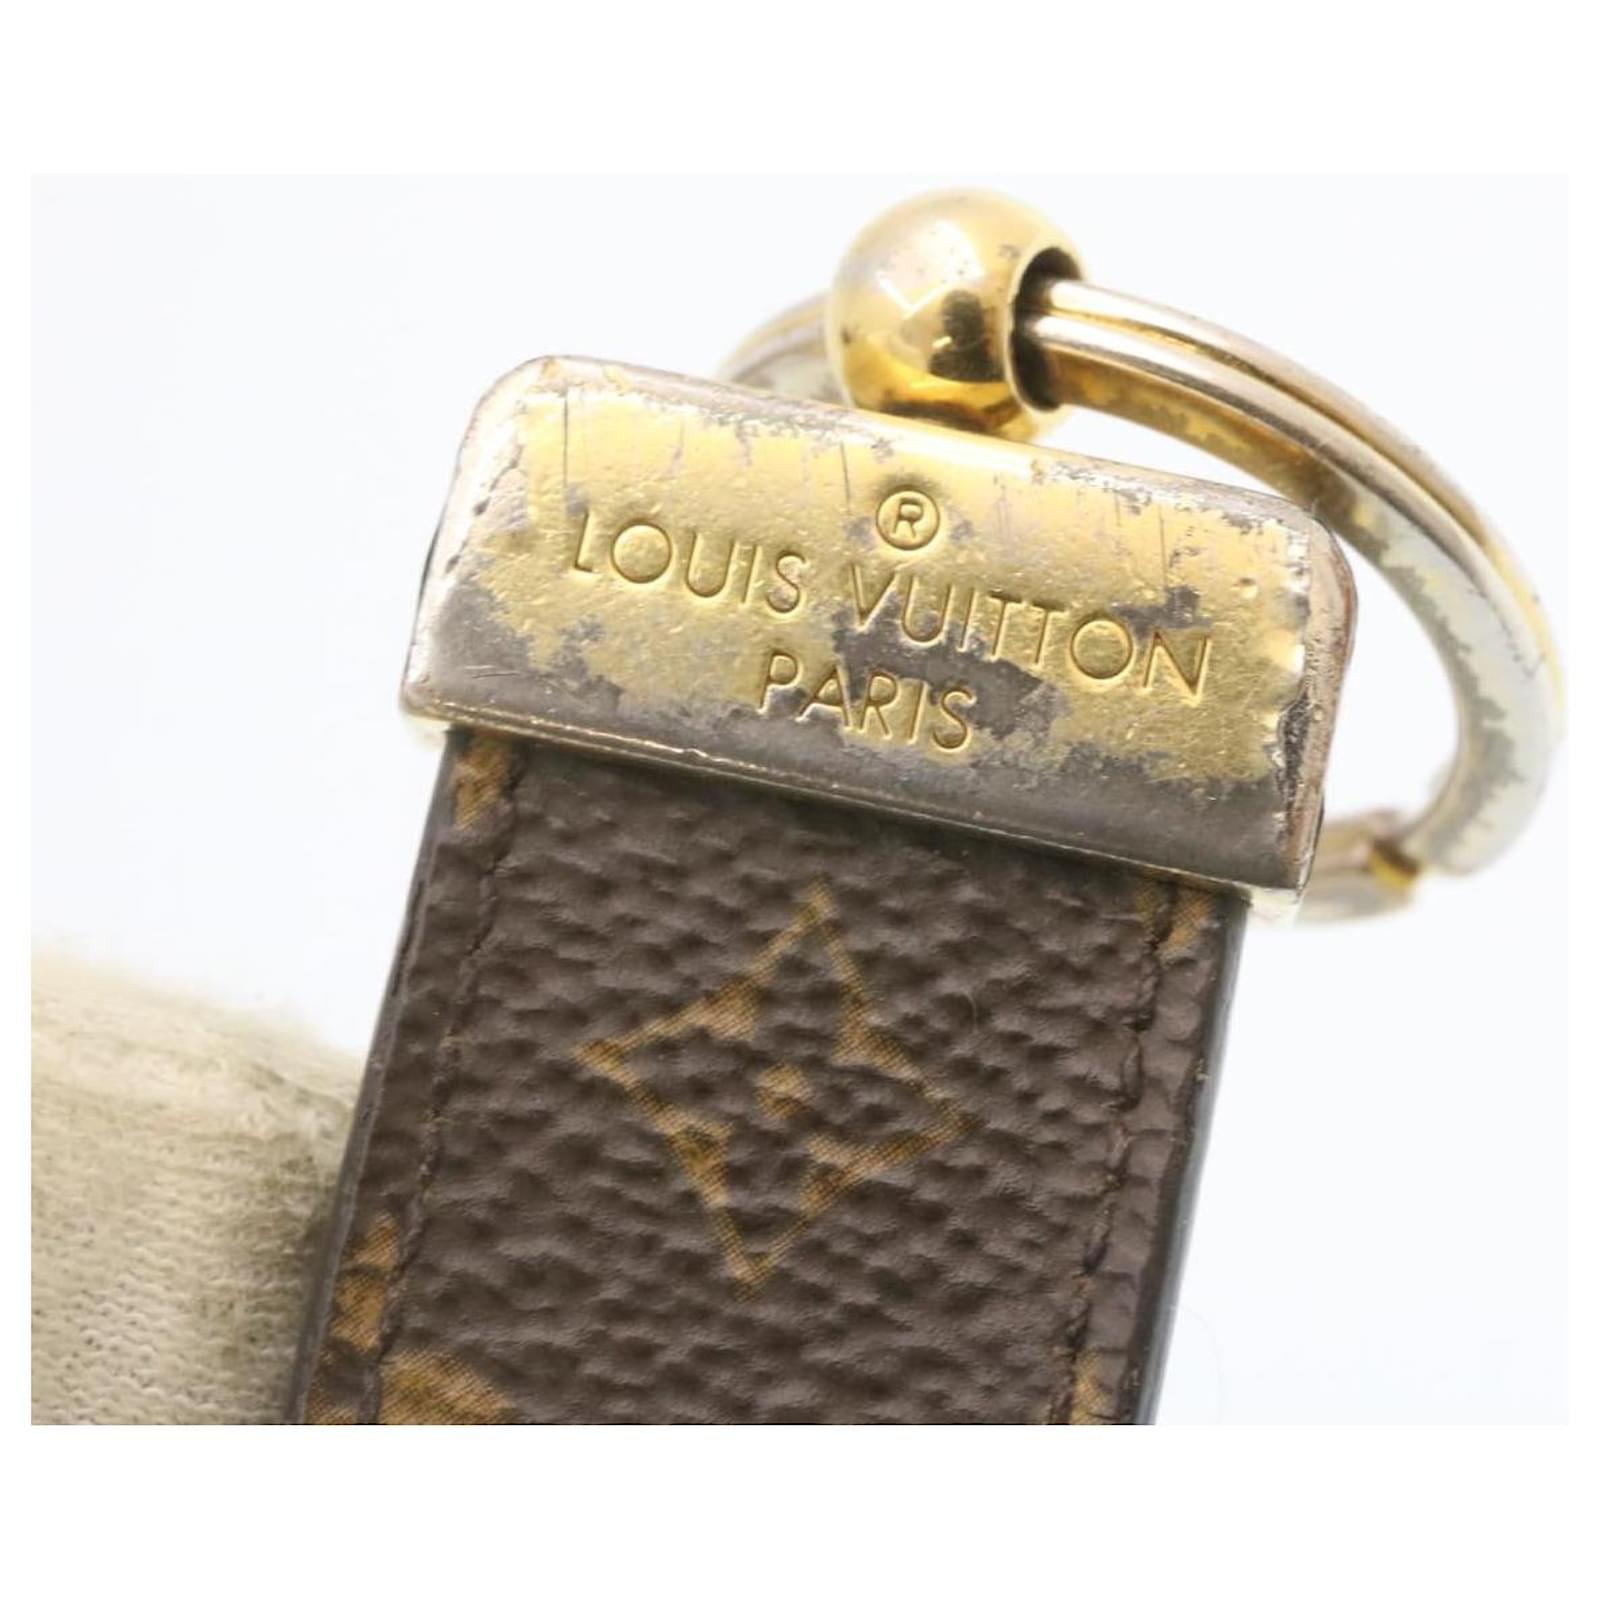 LOUIS VUITTON LOUIS VUITTON Porte-cle Dragonne Key chain ring holder M00548  leather noir Gold M00548